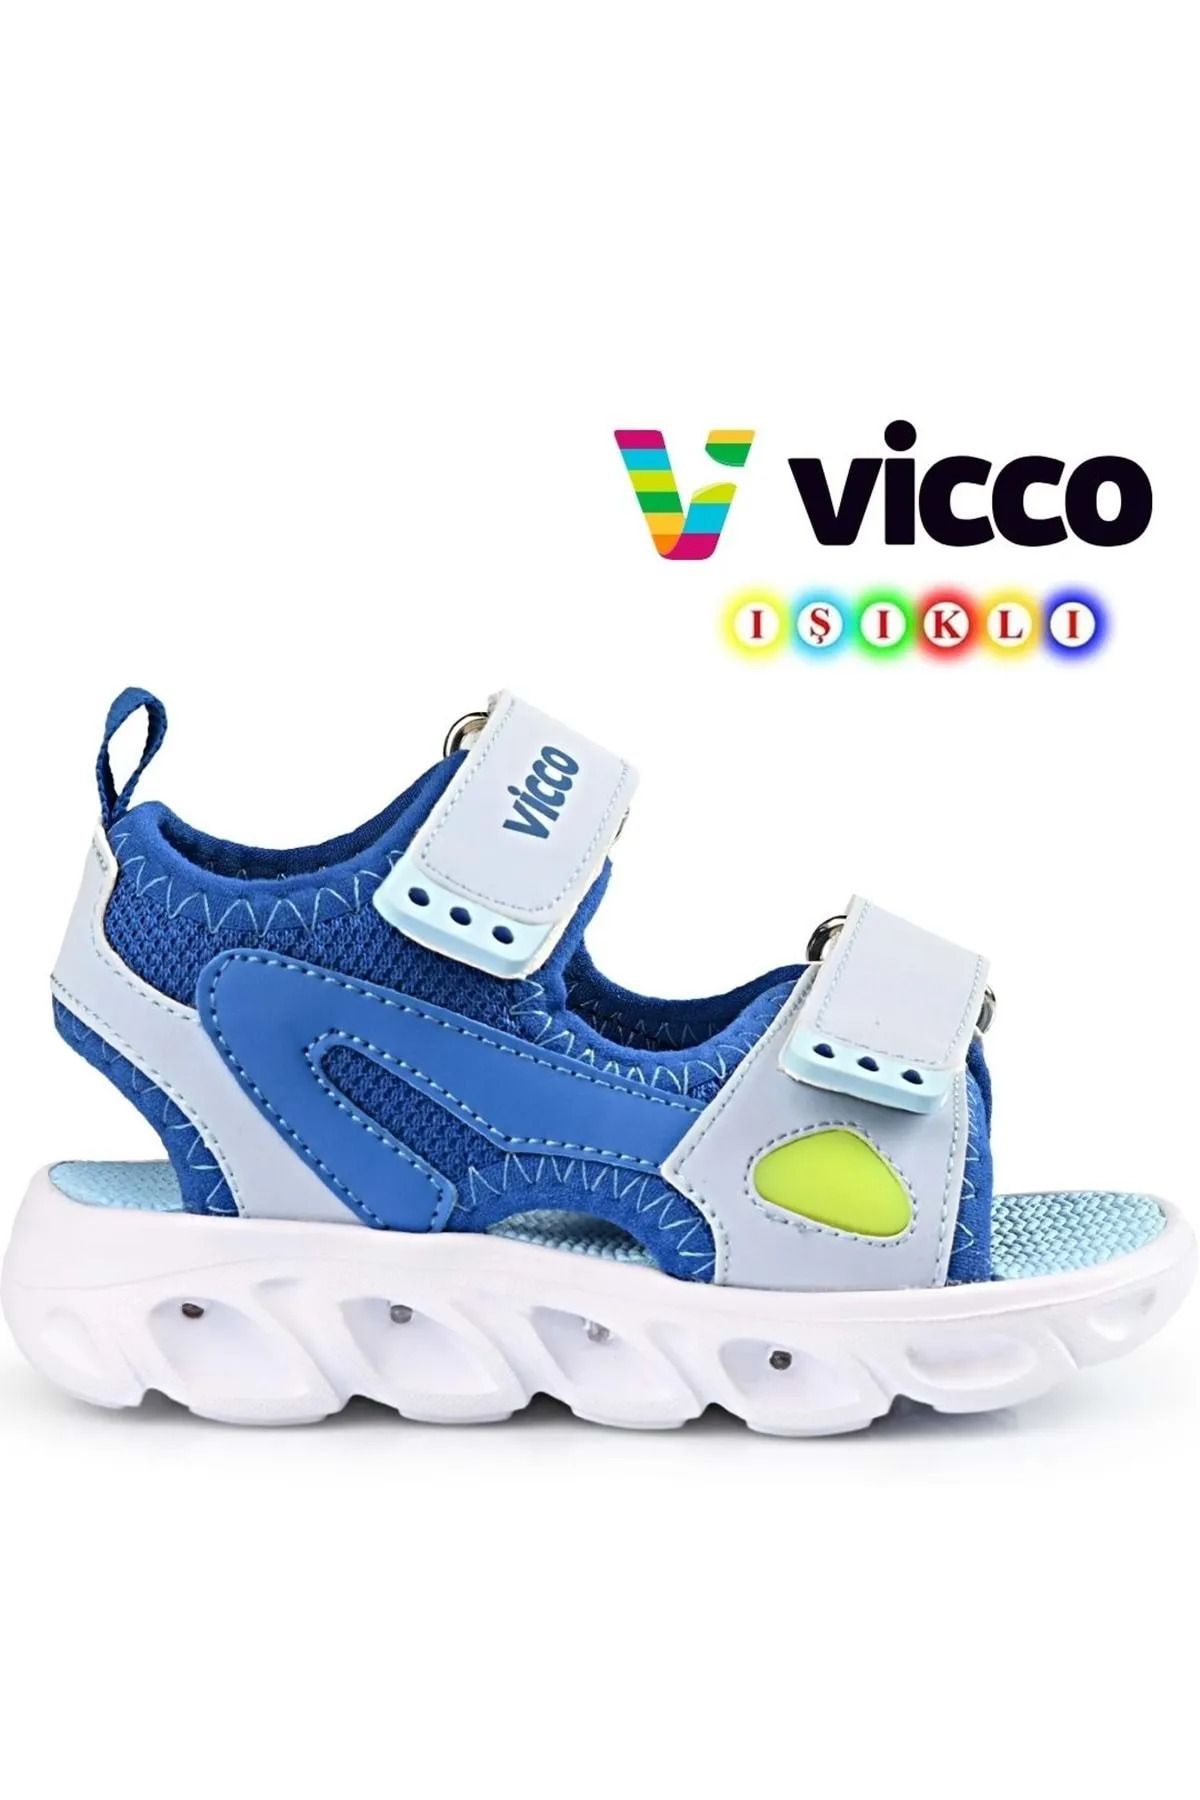 Vicco Erkek Işıklı Yazlık Terletmez Koku Yapmaz Kaydırmaz Taban Full Ortopedik Çocuk Sandalet.Ultra Hafif